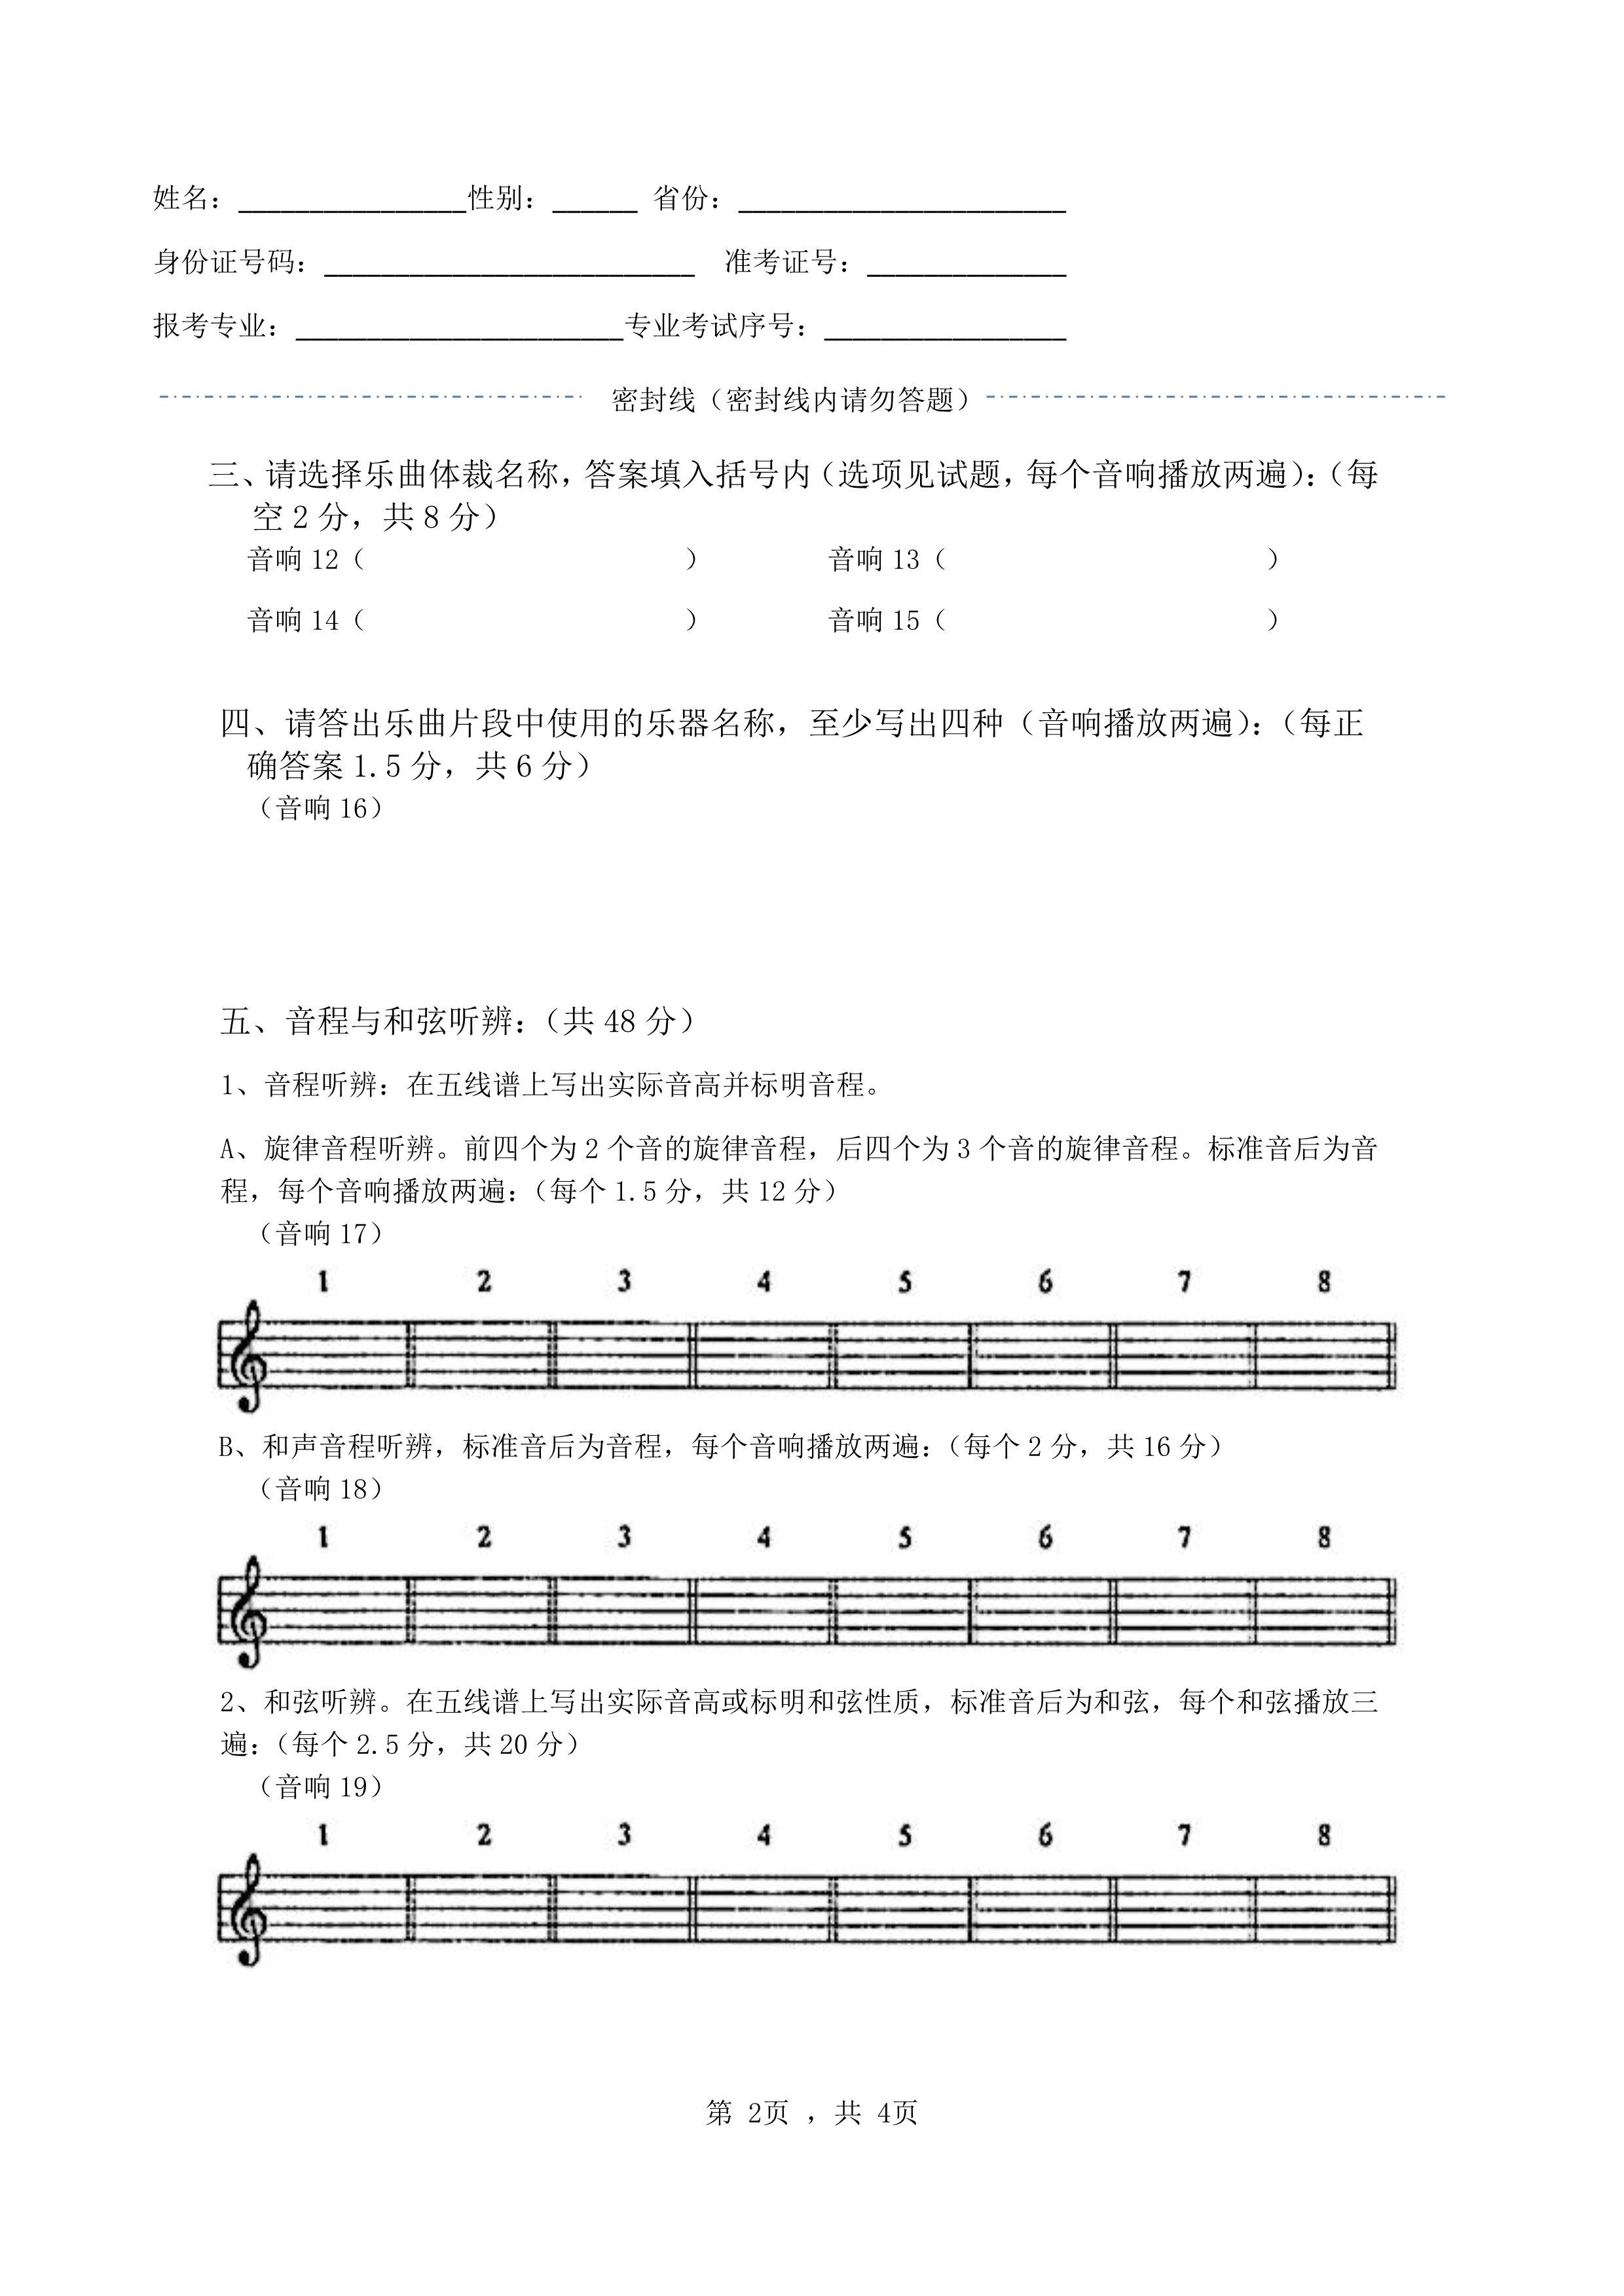 南京艺术学院2022年本科招生录音艺术专业《音响听辨》科目考试答题纸及草稿纸_2.jpg